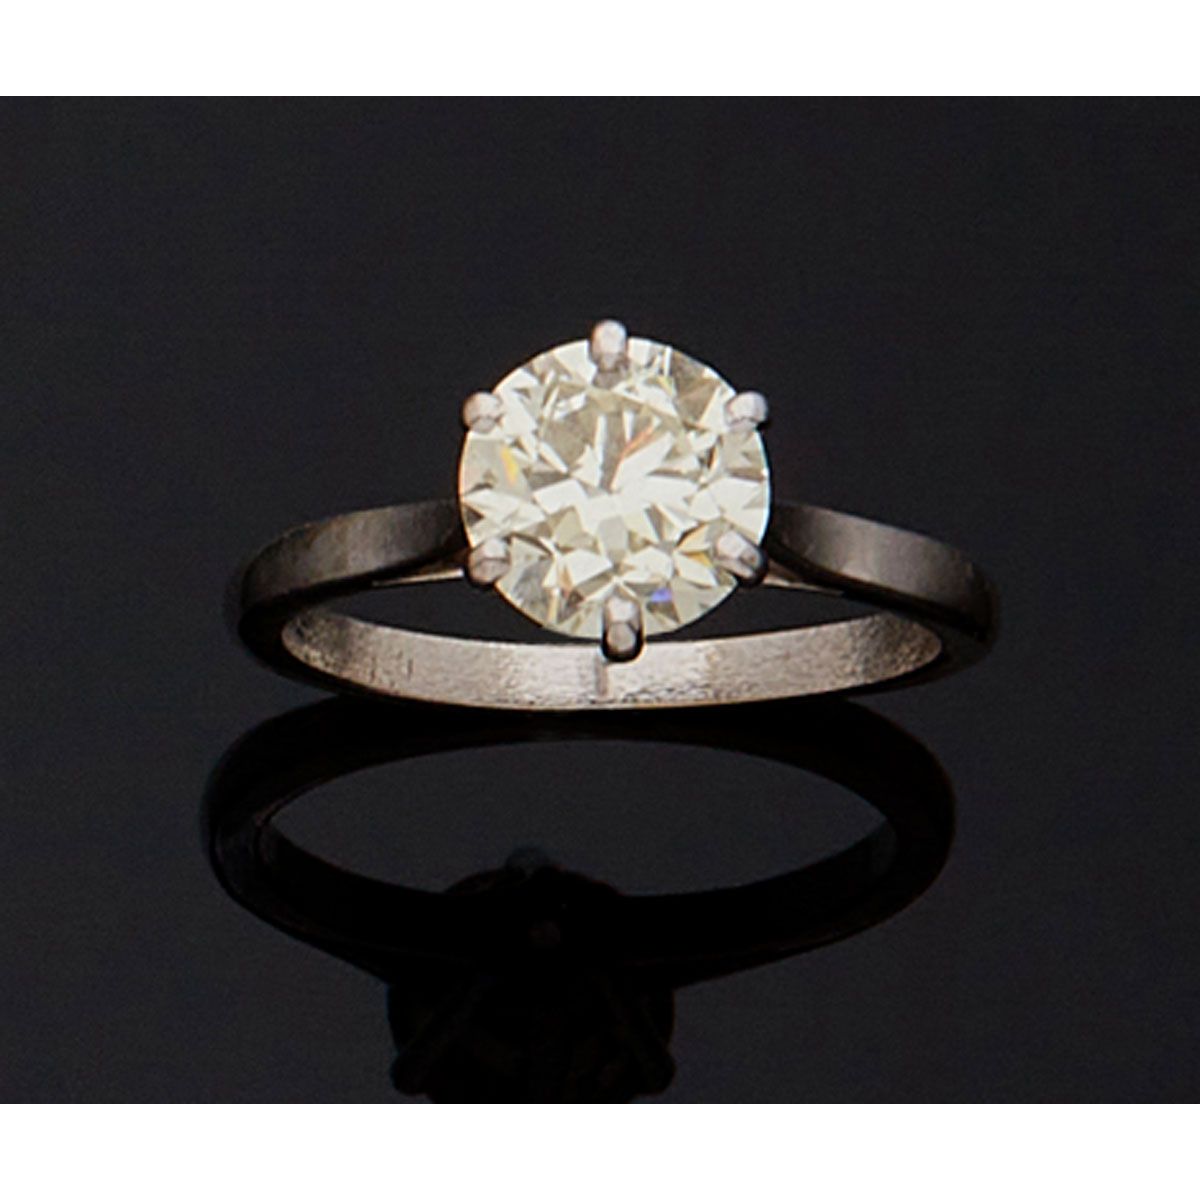 Null 18K金750毫米和铂金800毫米的单钻戒指，镶嵌了一颗半切钻石，重约2克拉。

B.P. 3.8克。